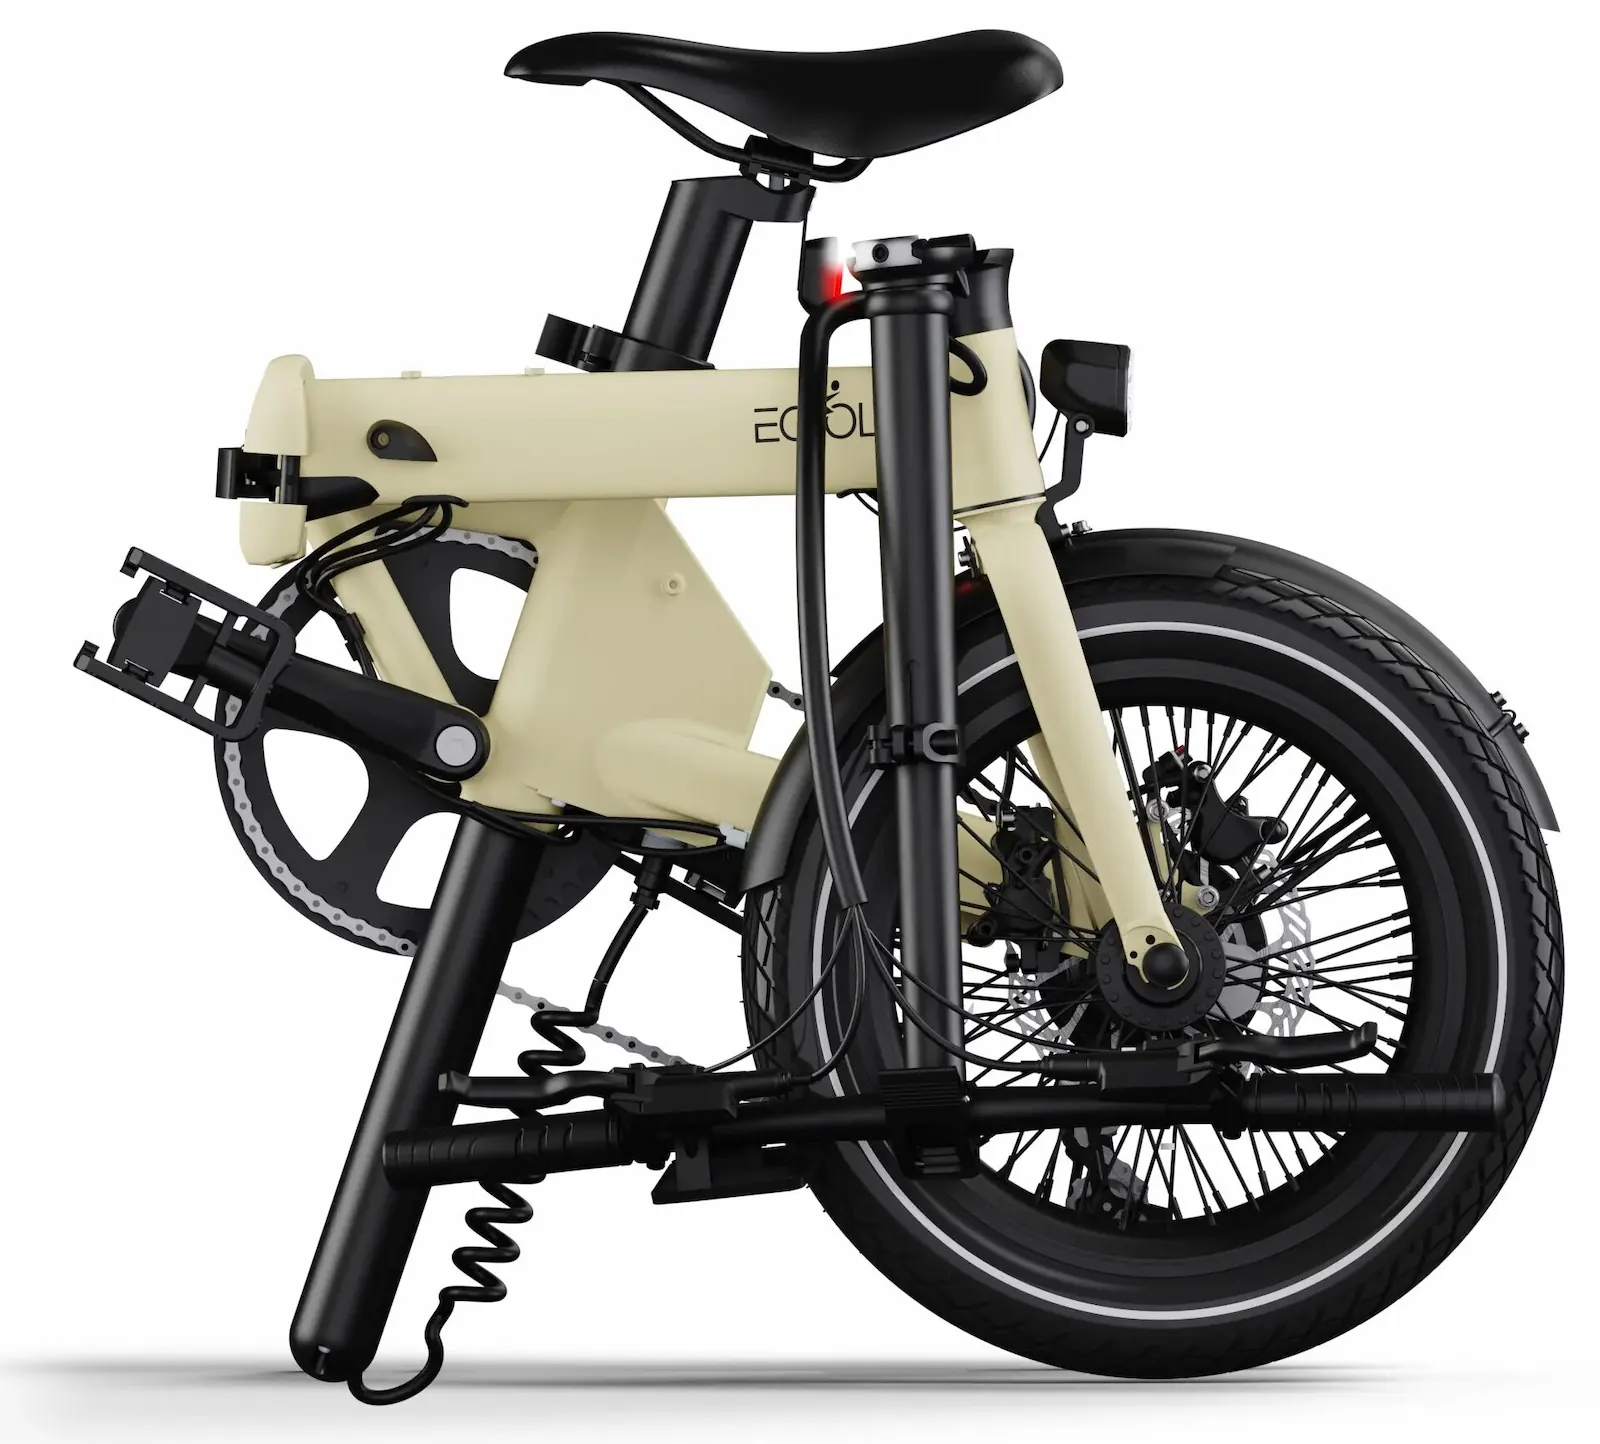 Electric Folding Bike 16 Inch lightweight 14kg Eovolt Morning Gold